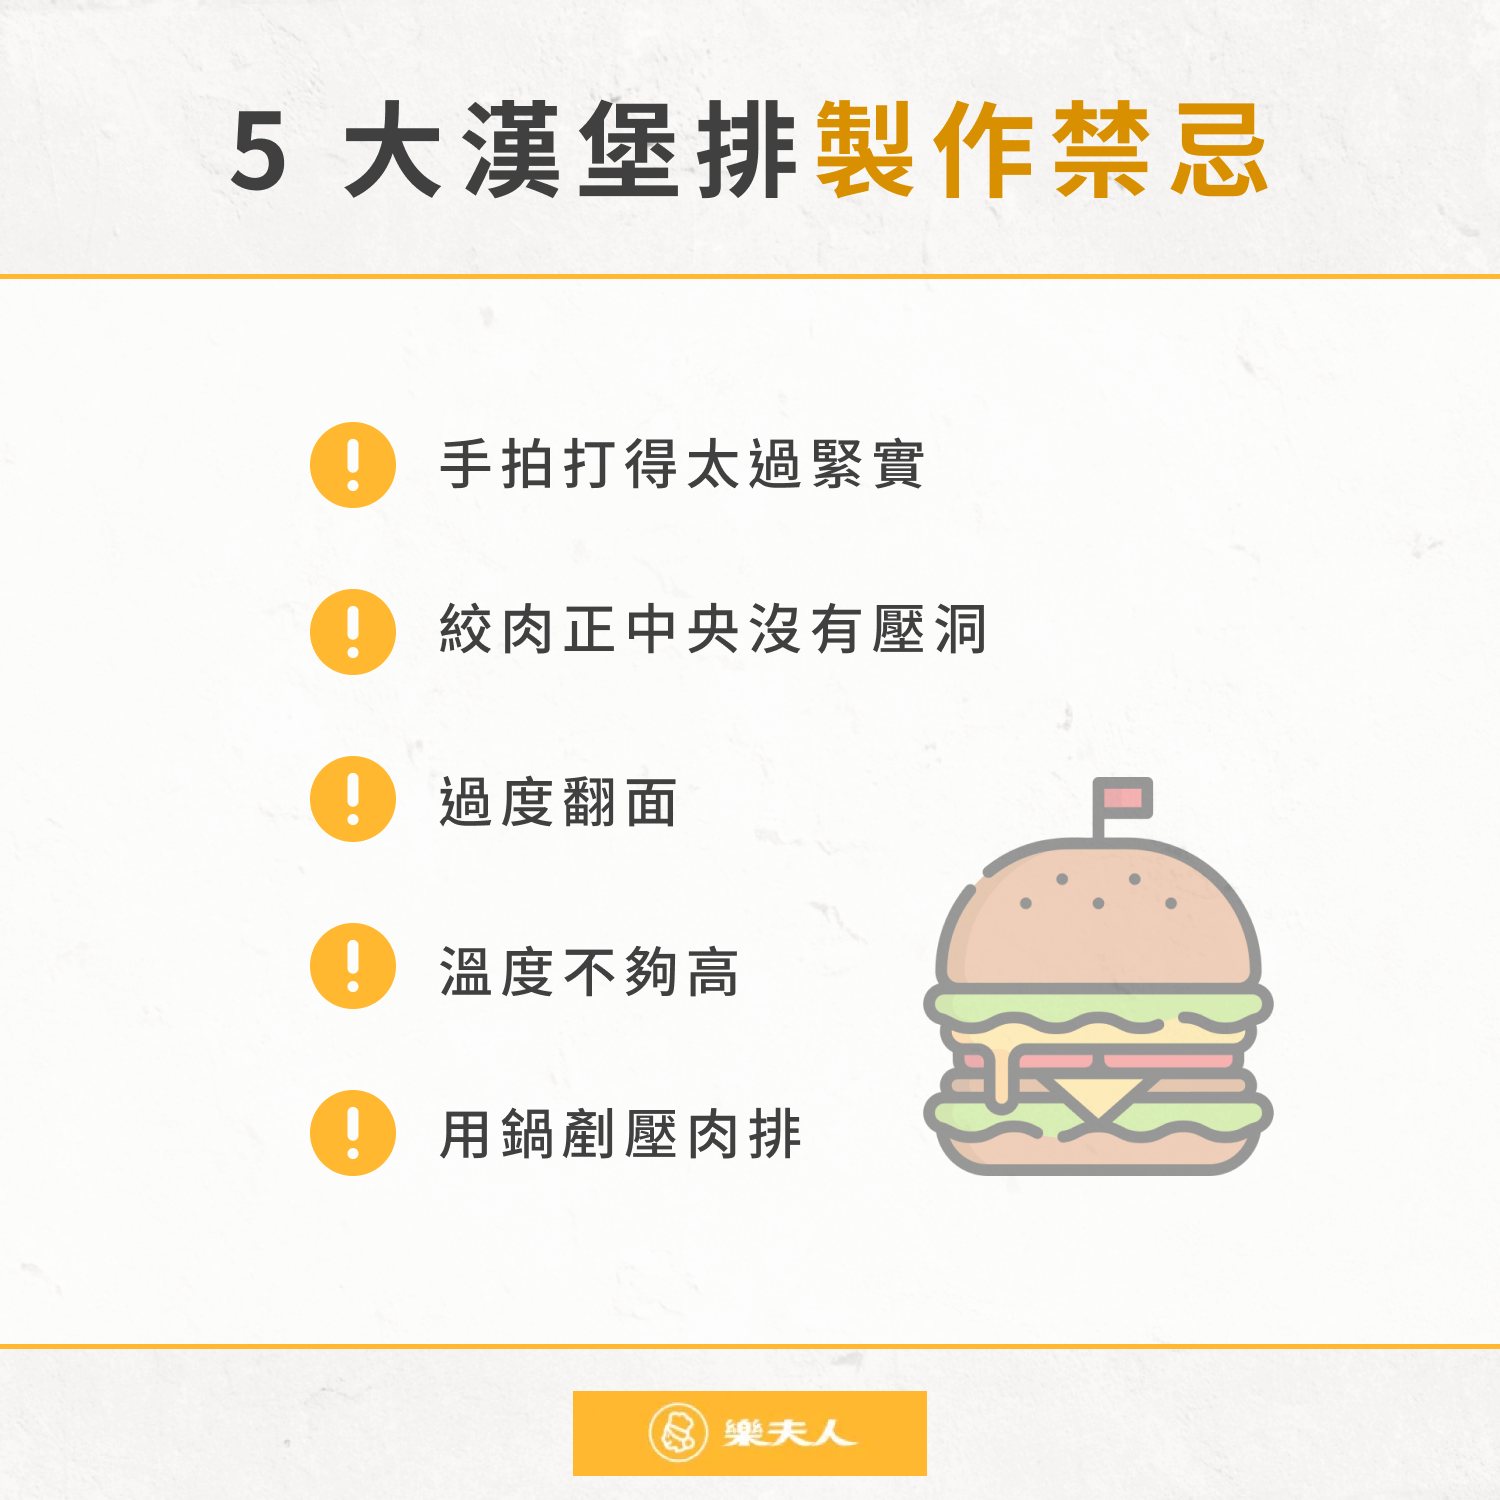 5 大漢堡排製作禁忌